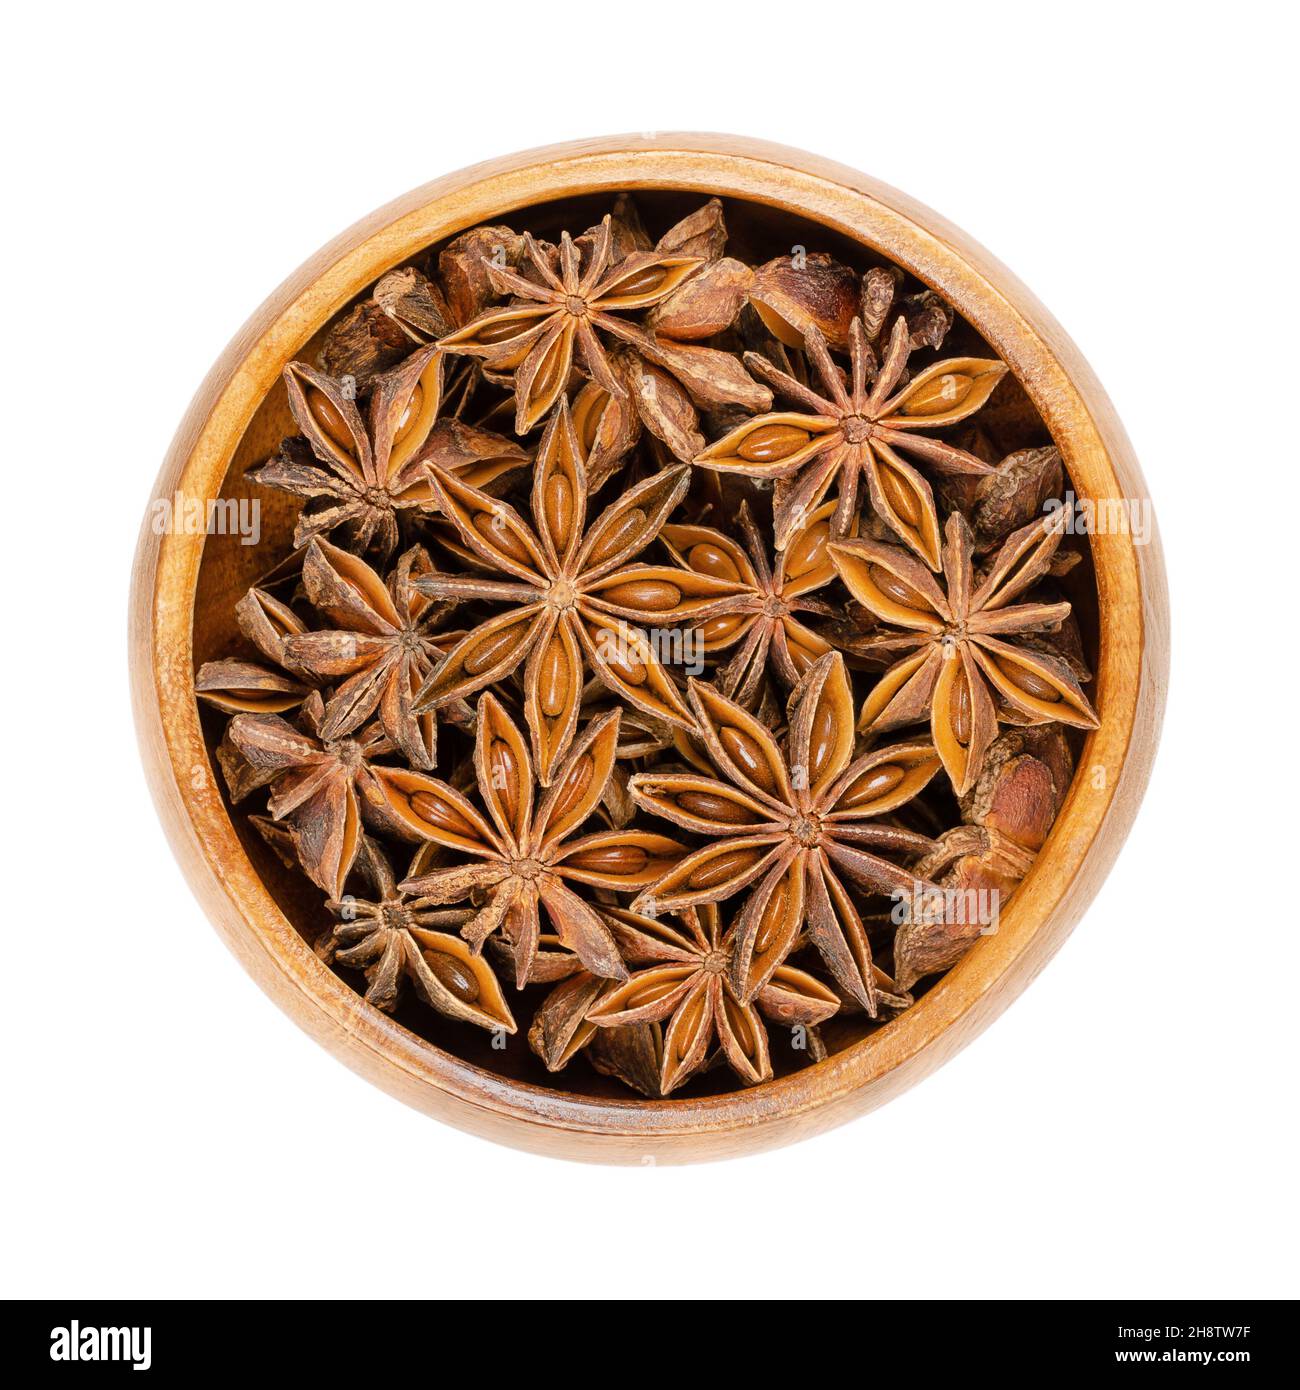 Frutti e semi di anice stellato, in una ciotola di legno. Conosciuto anche come staranise, anice stellato o badian. Pericarps secchi a forma di stella di Illicium verum. Foto Stock